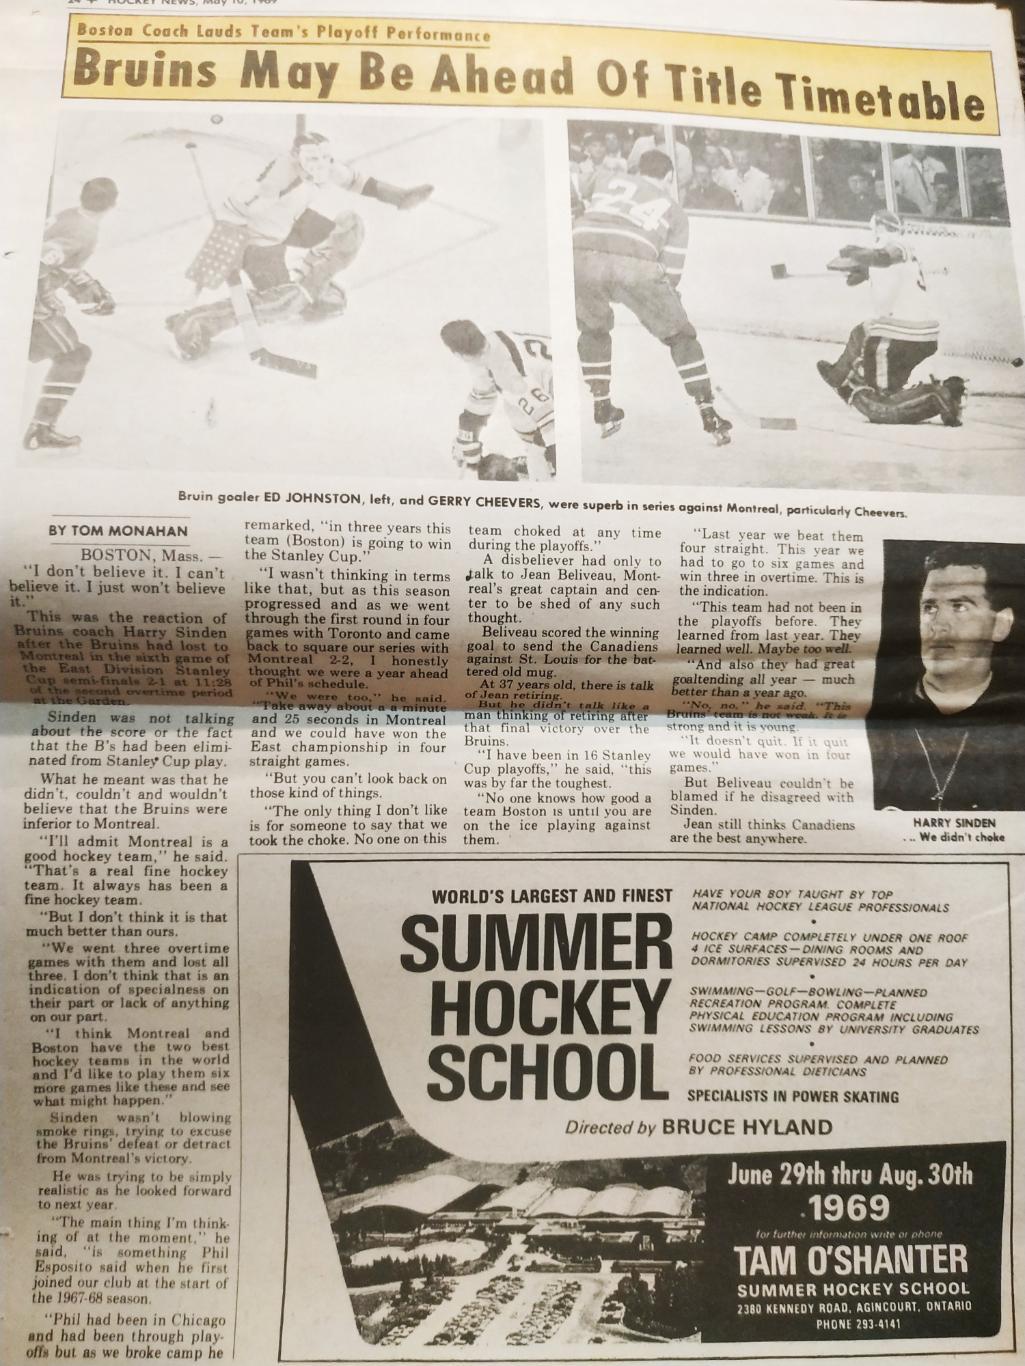 ХОККЕЙ ЖУРНАЛ ЕЖЕНЕДЕЛЬНИК НХЛ НОВОСТИ ХОККЕЯ NHL MAY 10 1969 THE HOCKEY NEWS 5